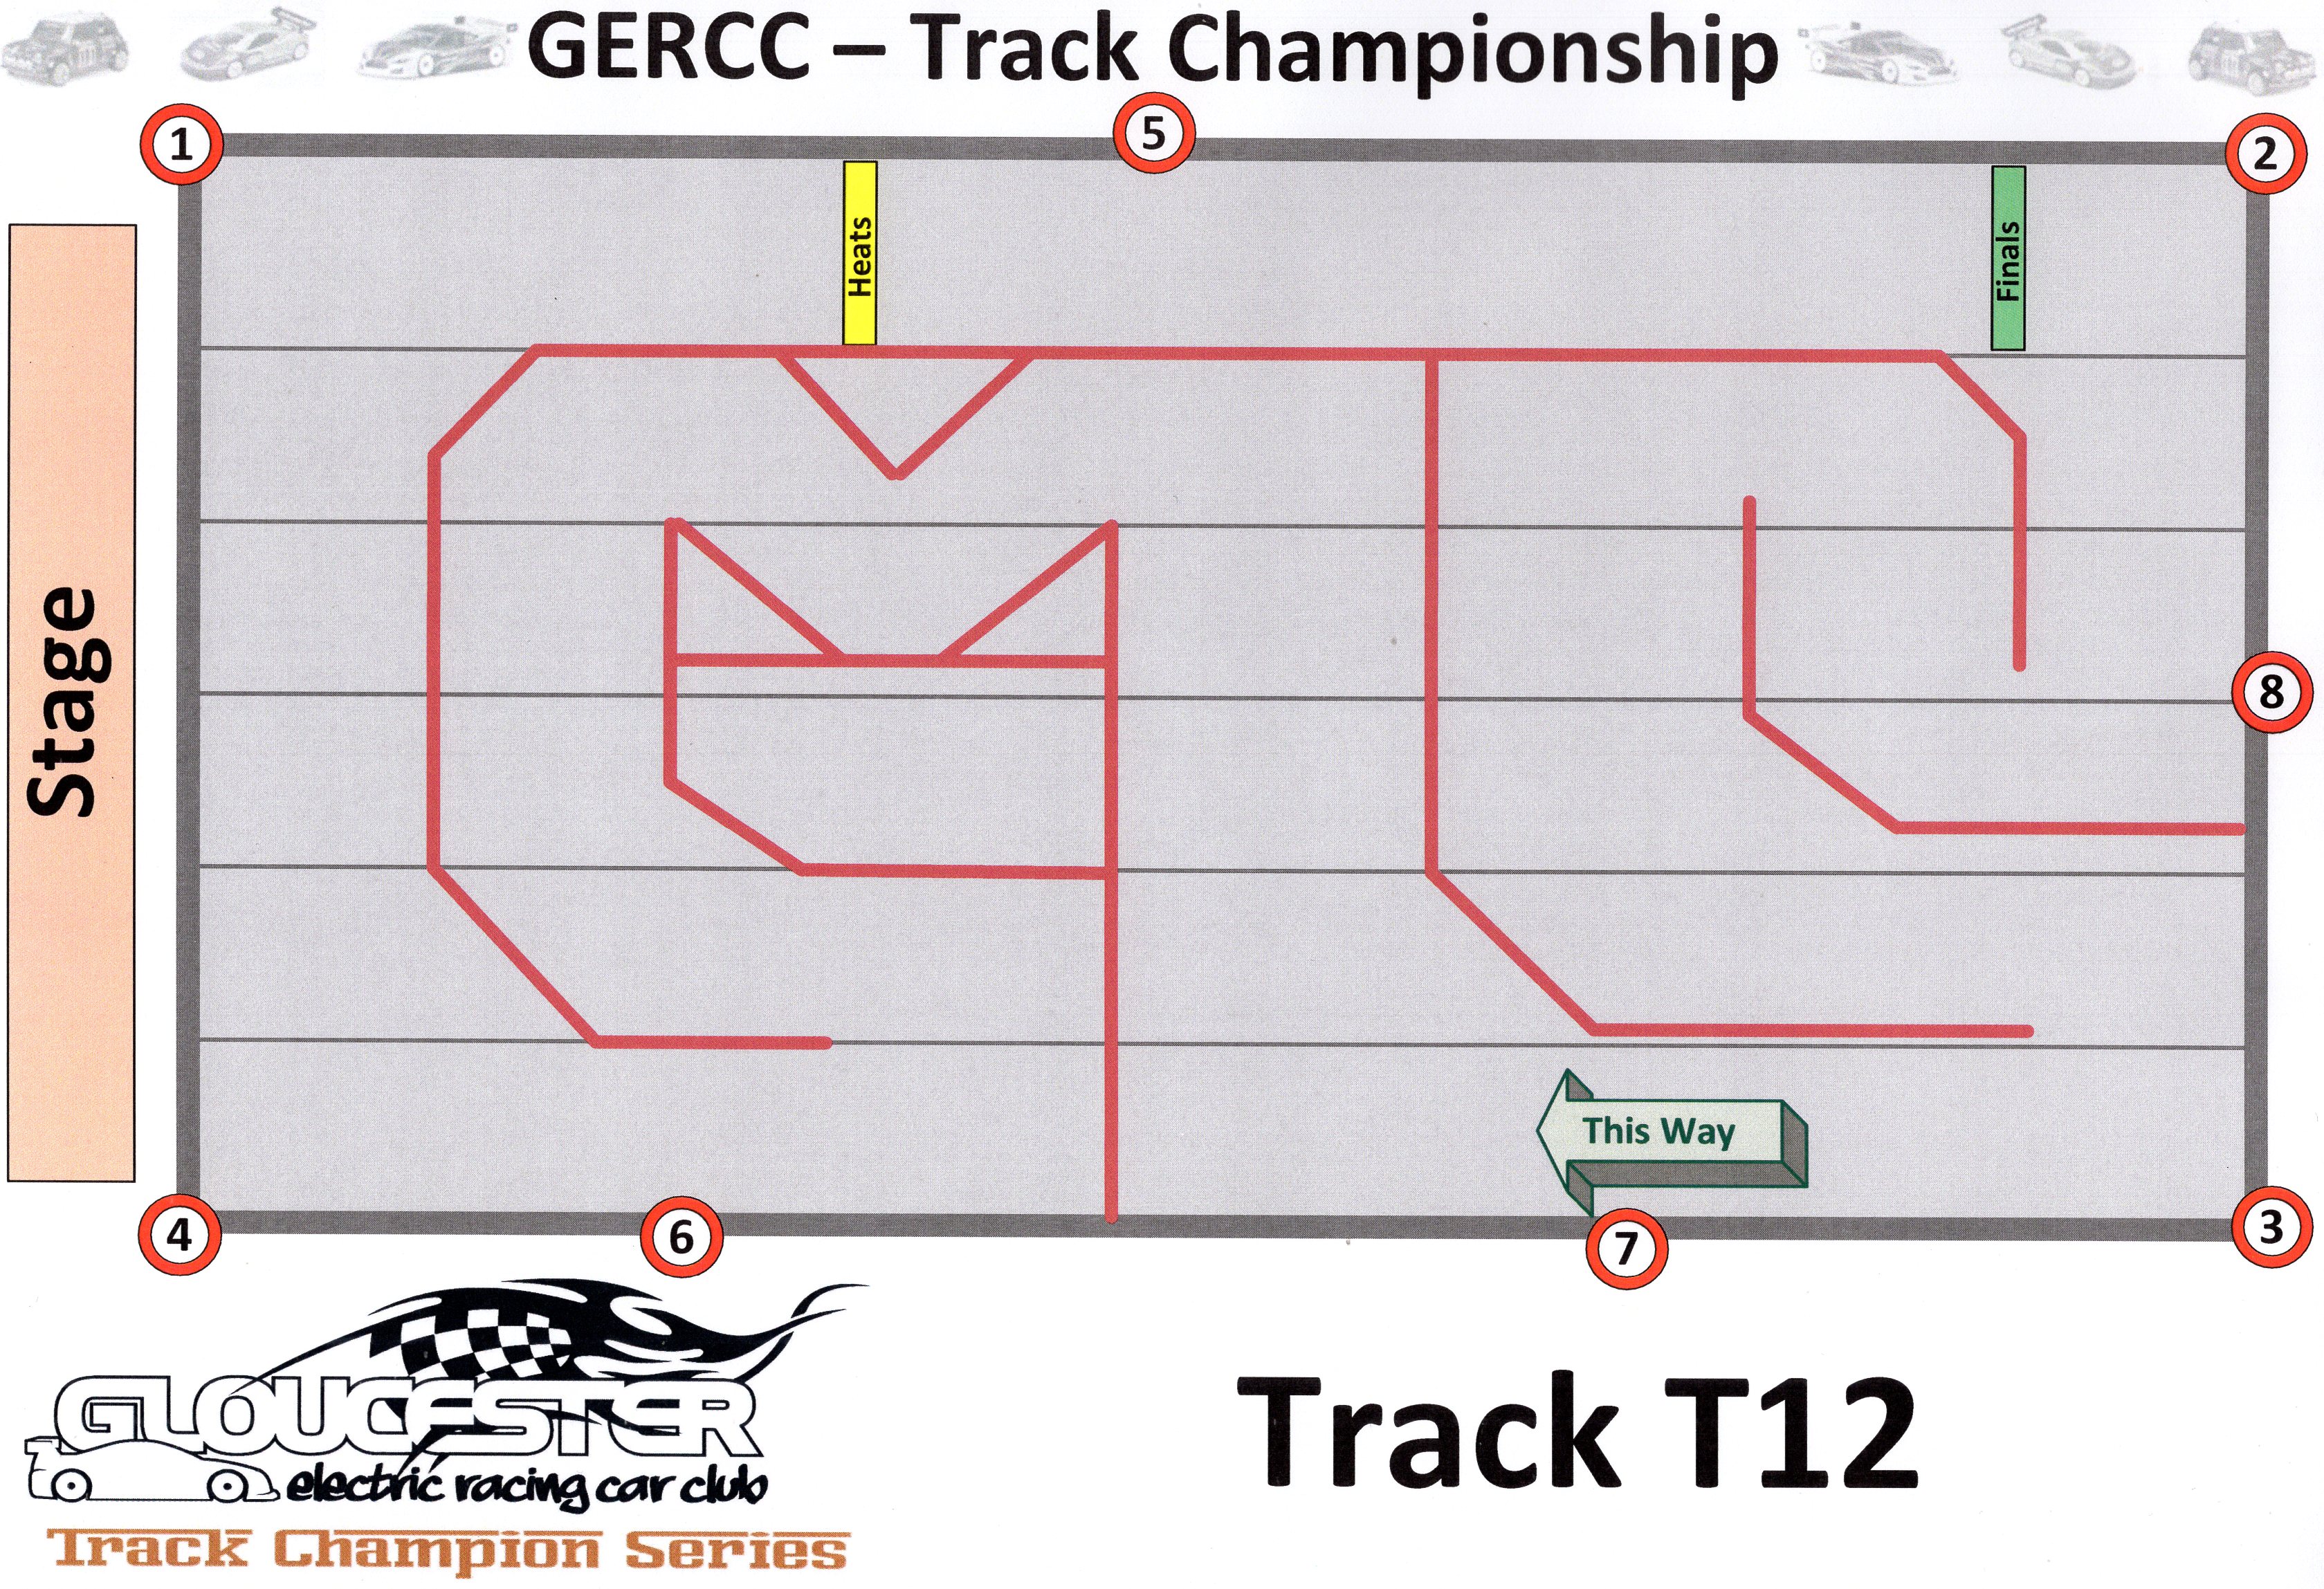 GERCC TCS Track 12